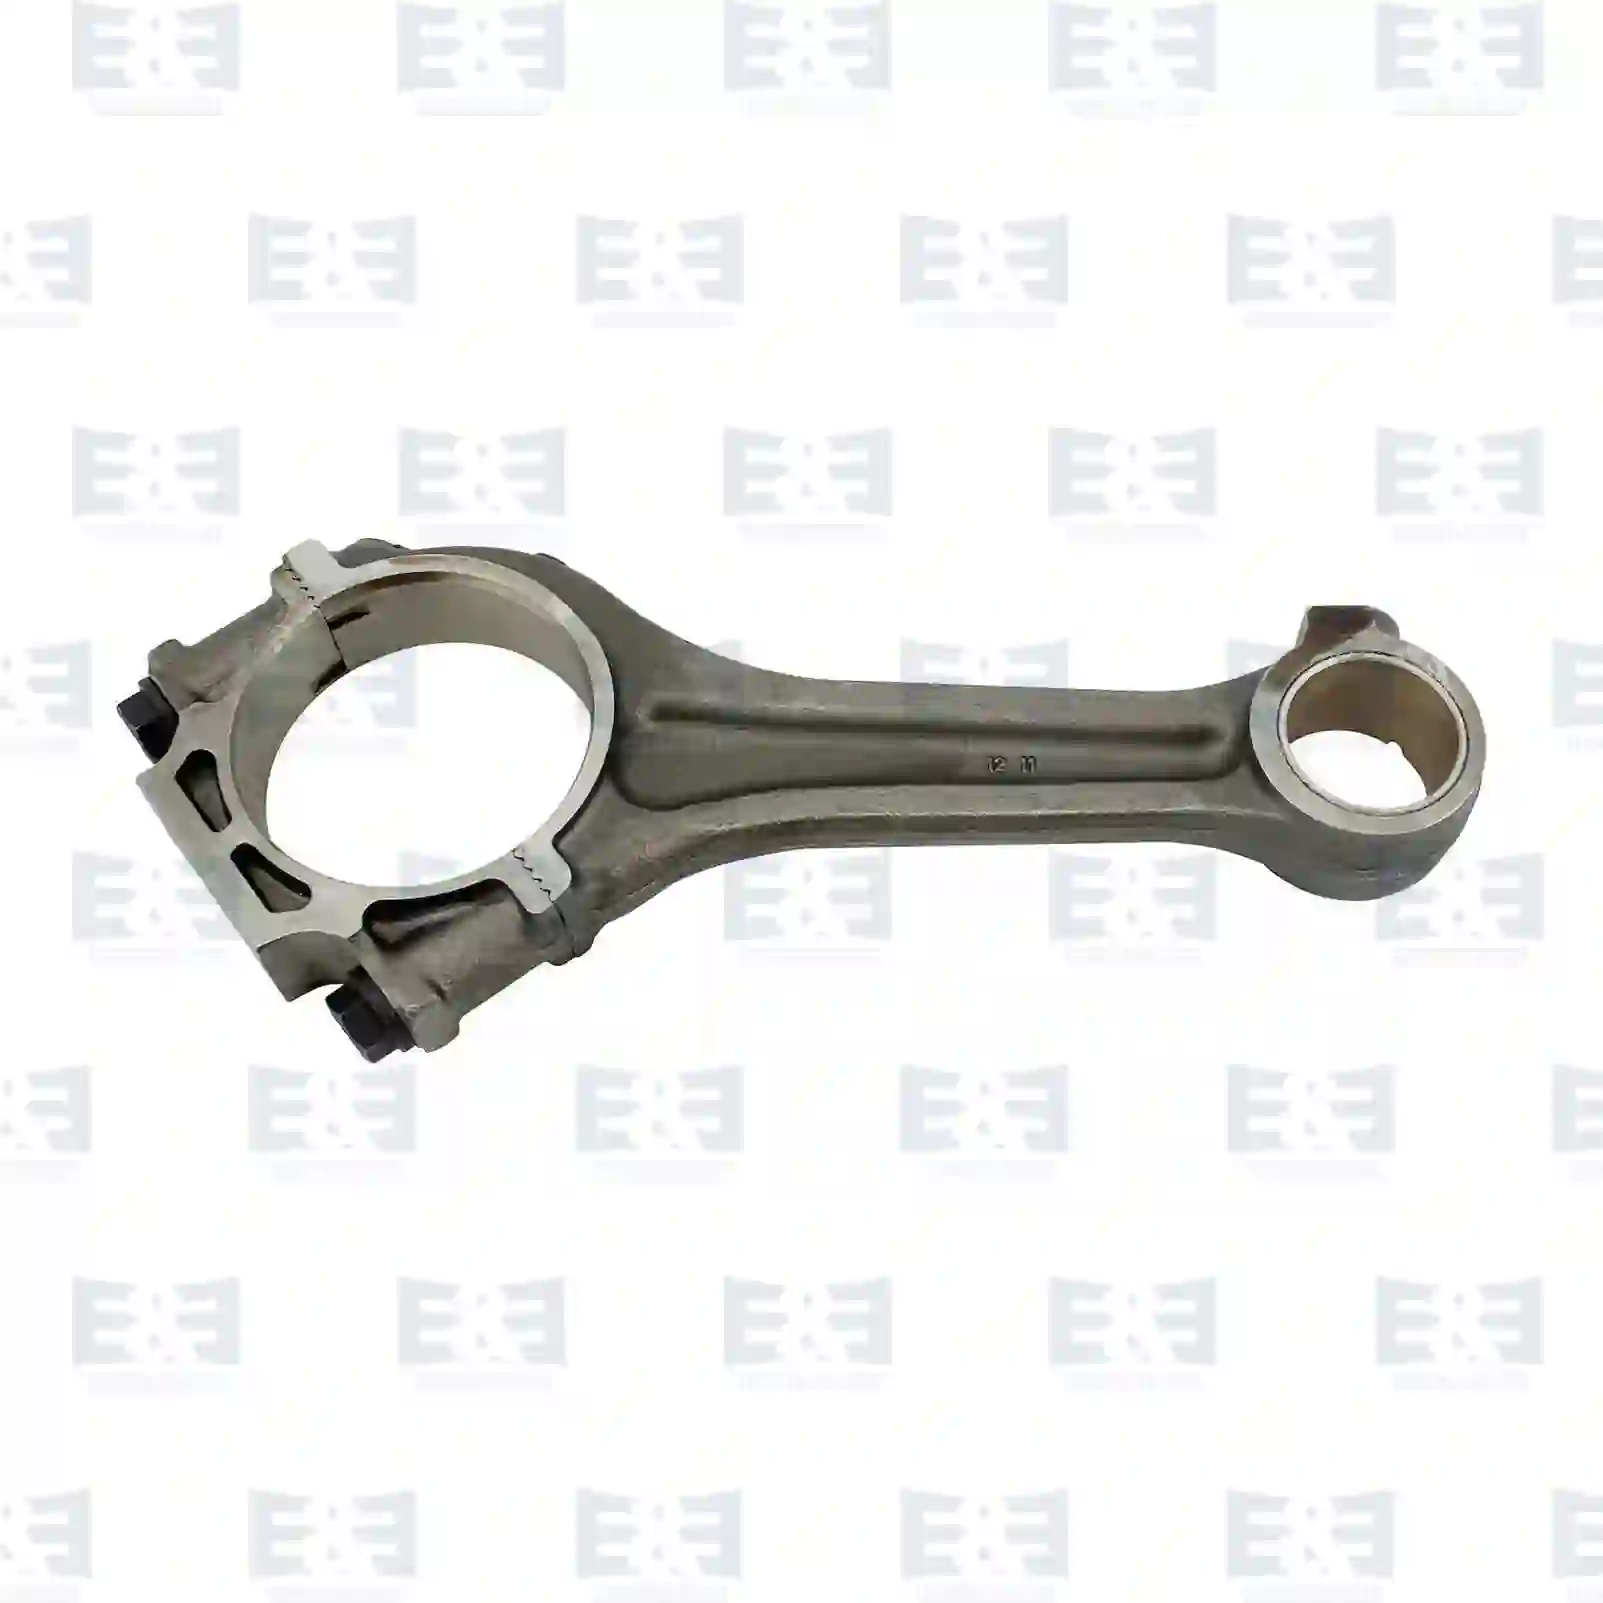  Connecting rod, straight head || E&E Truck Spare Parts | Truck Spare Parts, Auotomotive Spare Parts